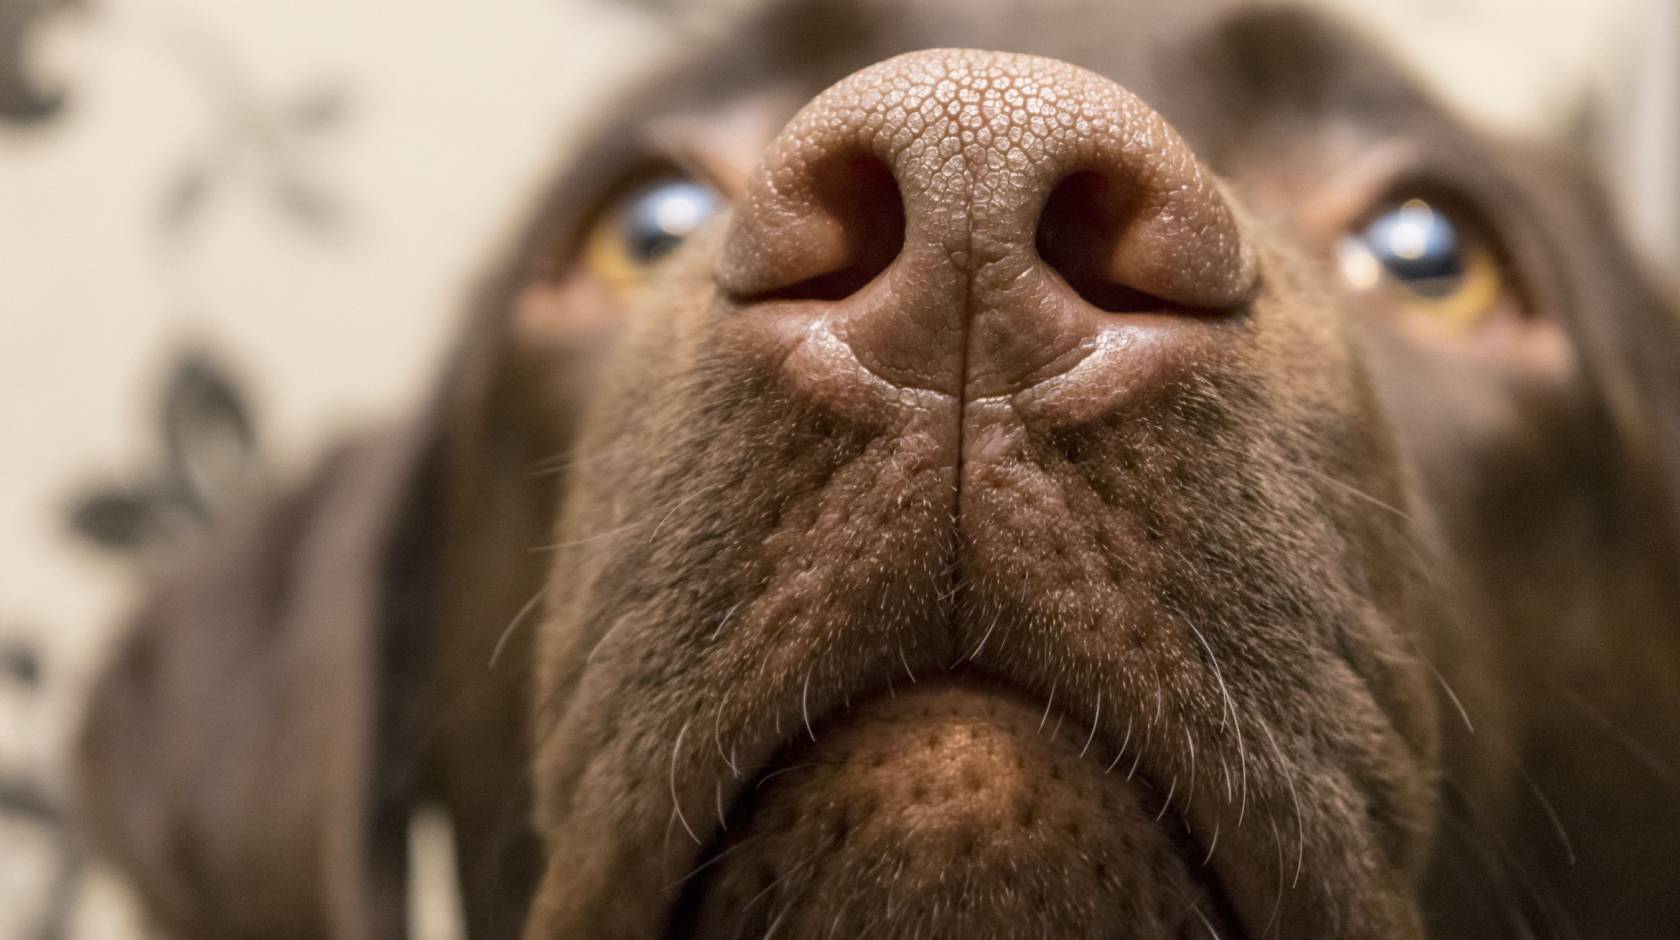 Closeup of a dog's nose